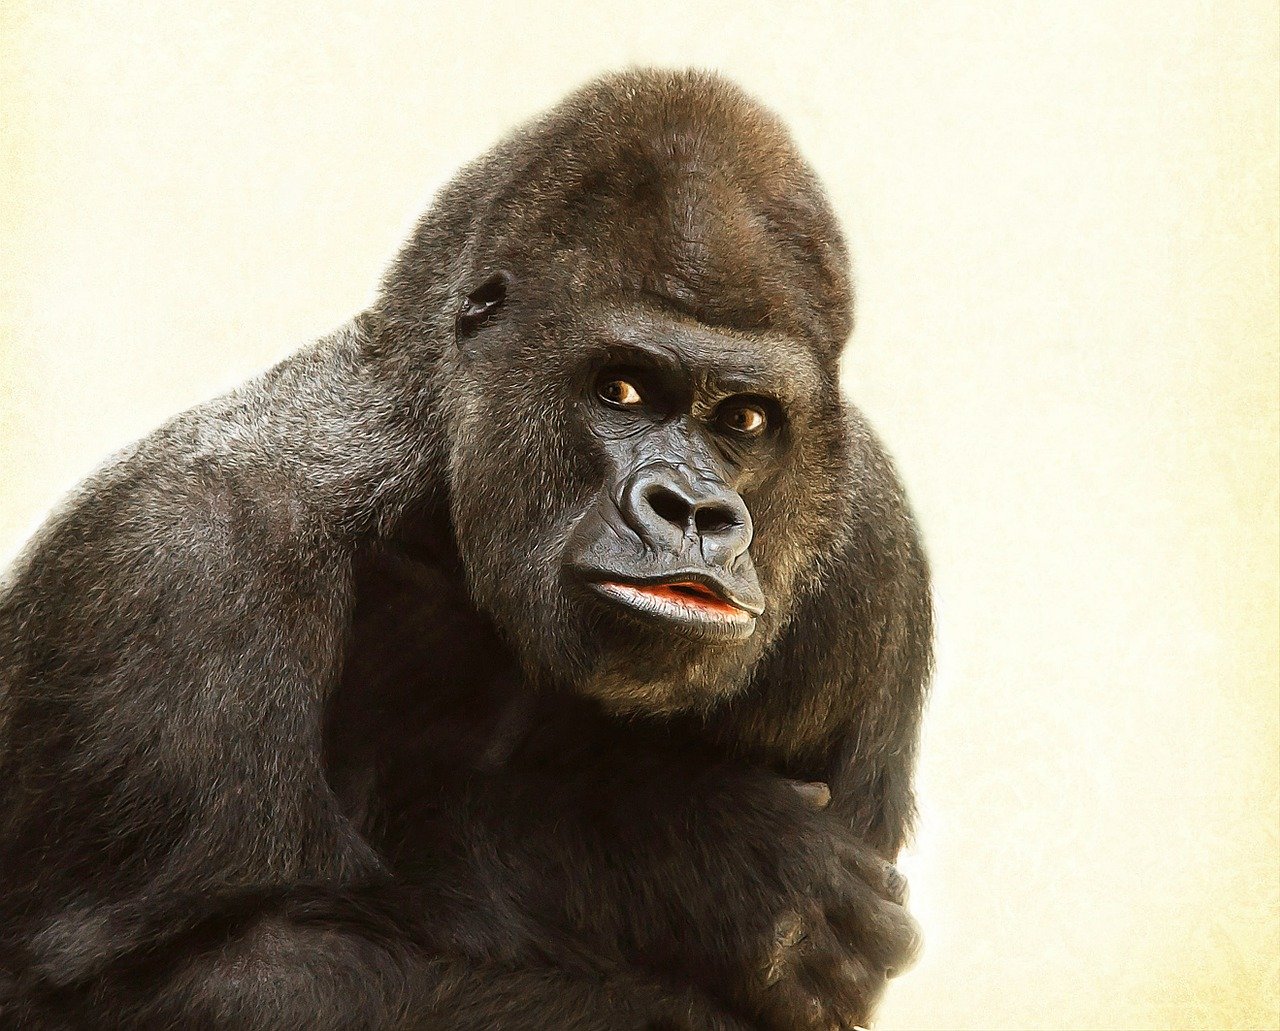 gorilla implant case sales